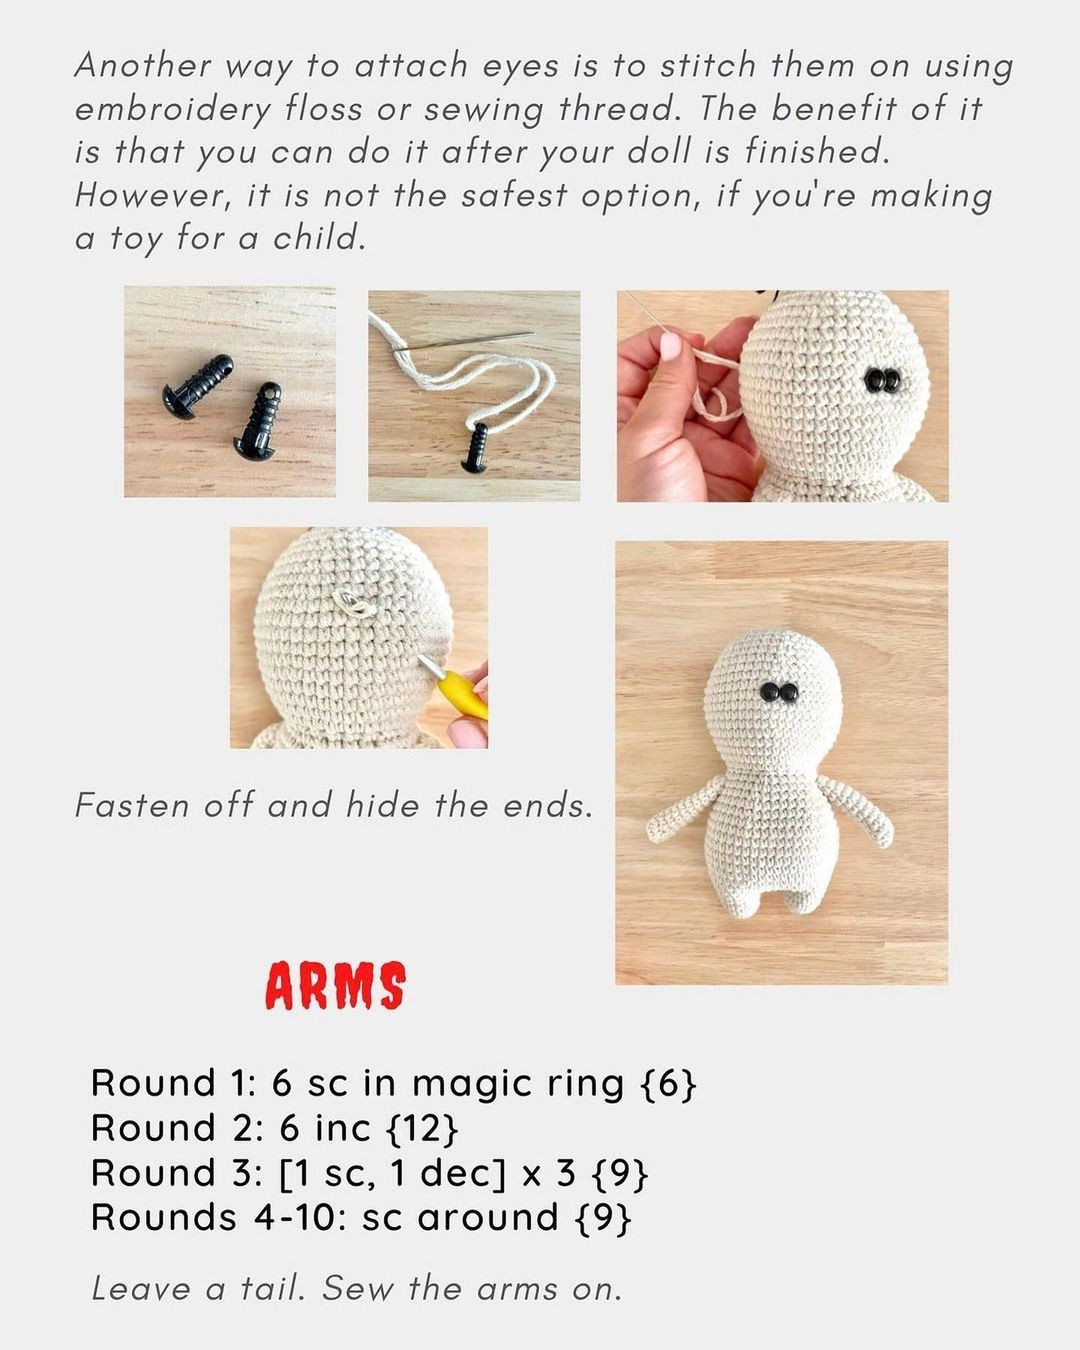 free crochet pattern little mummy